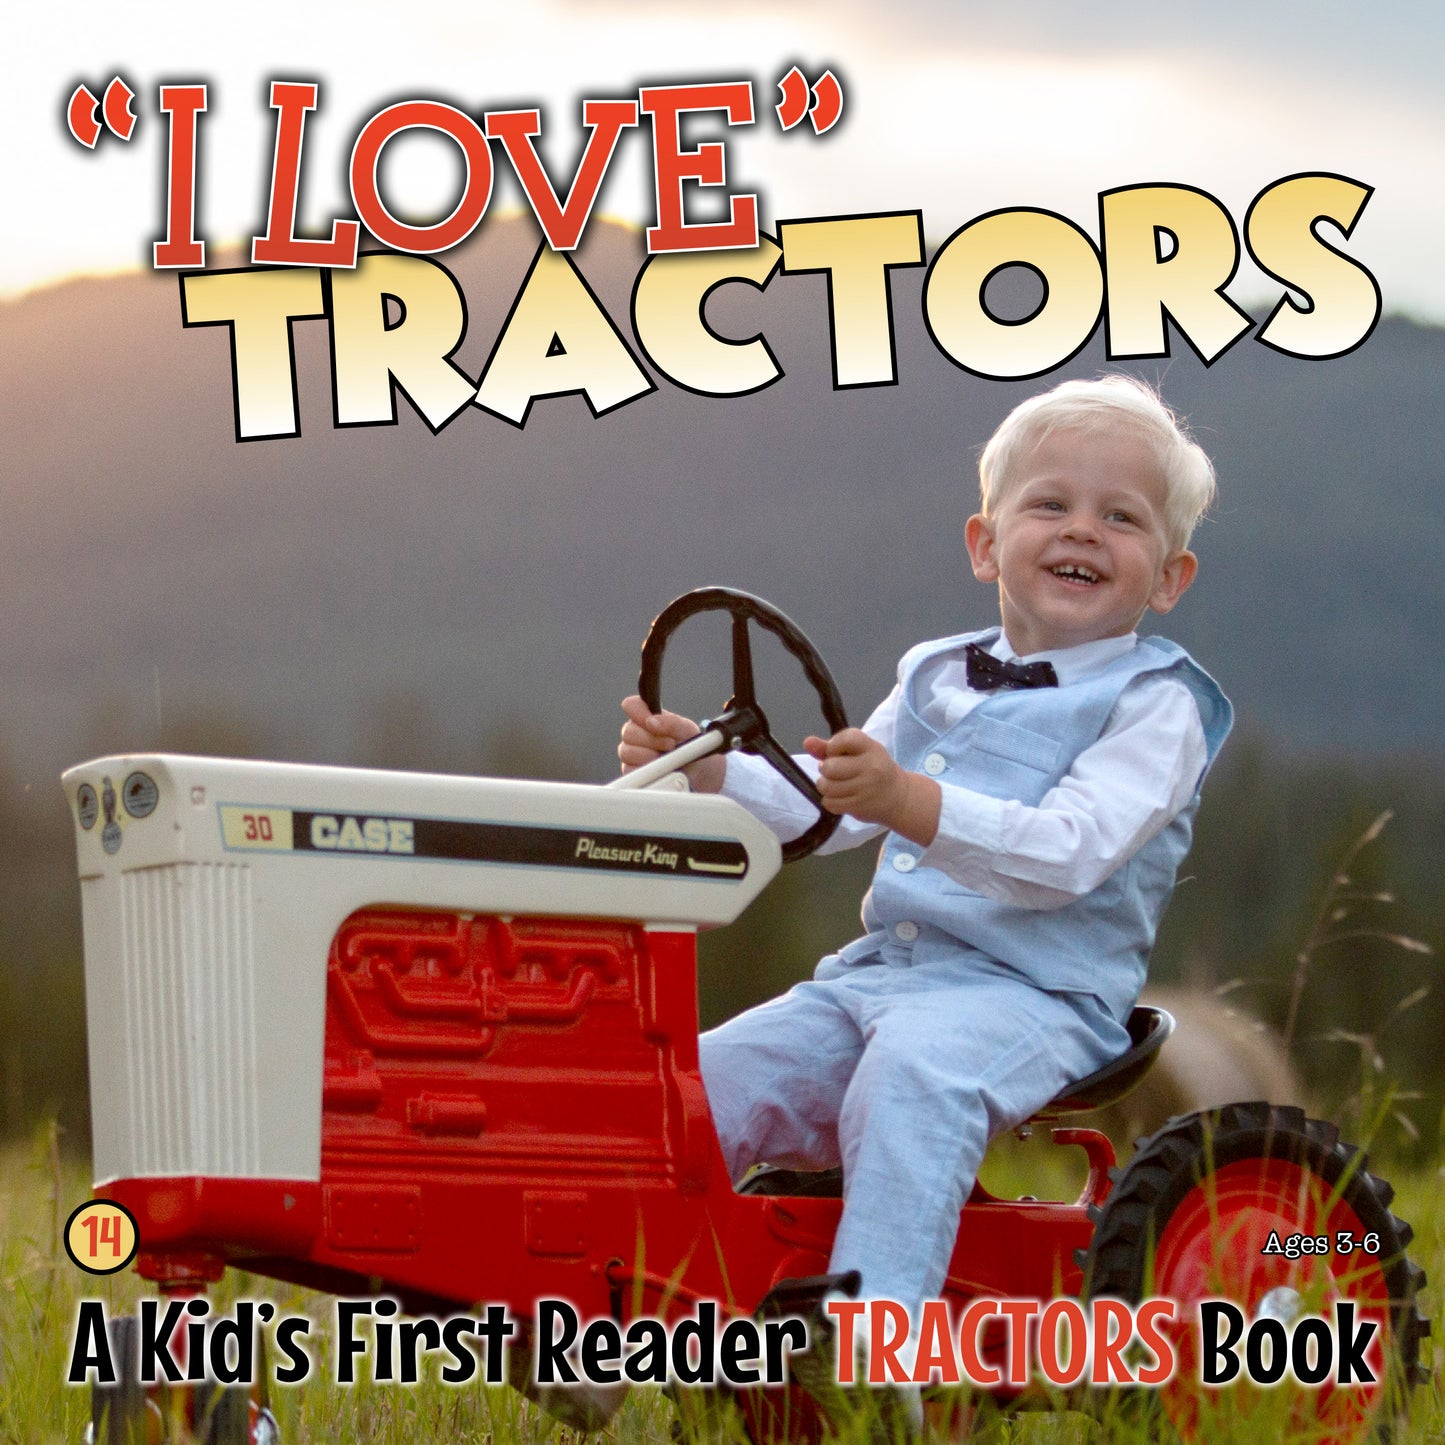 I Love 'Tractors' - A Kids First Reader Tractors Book